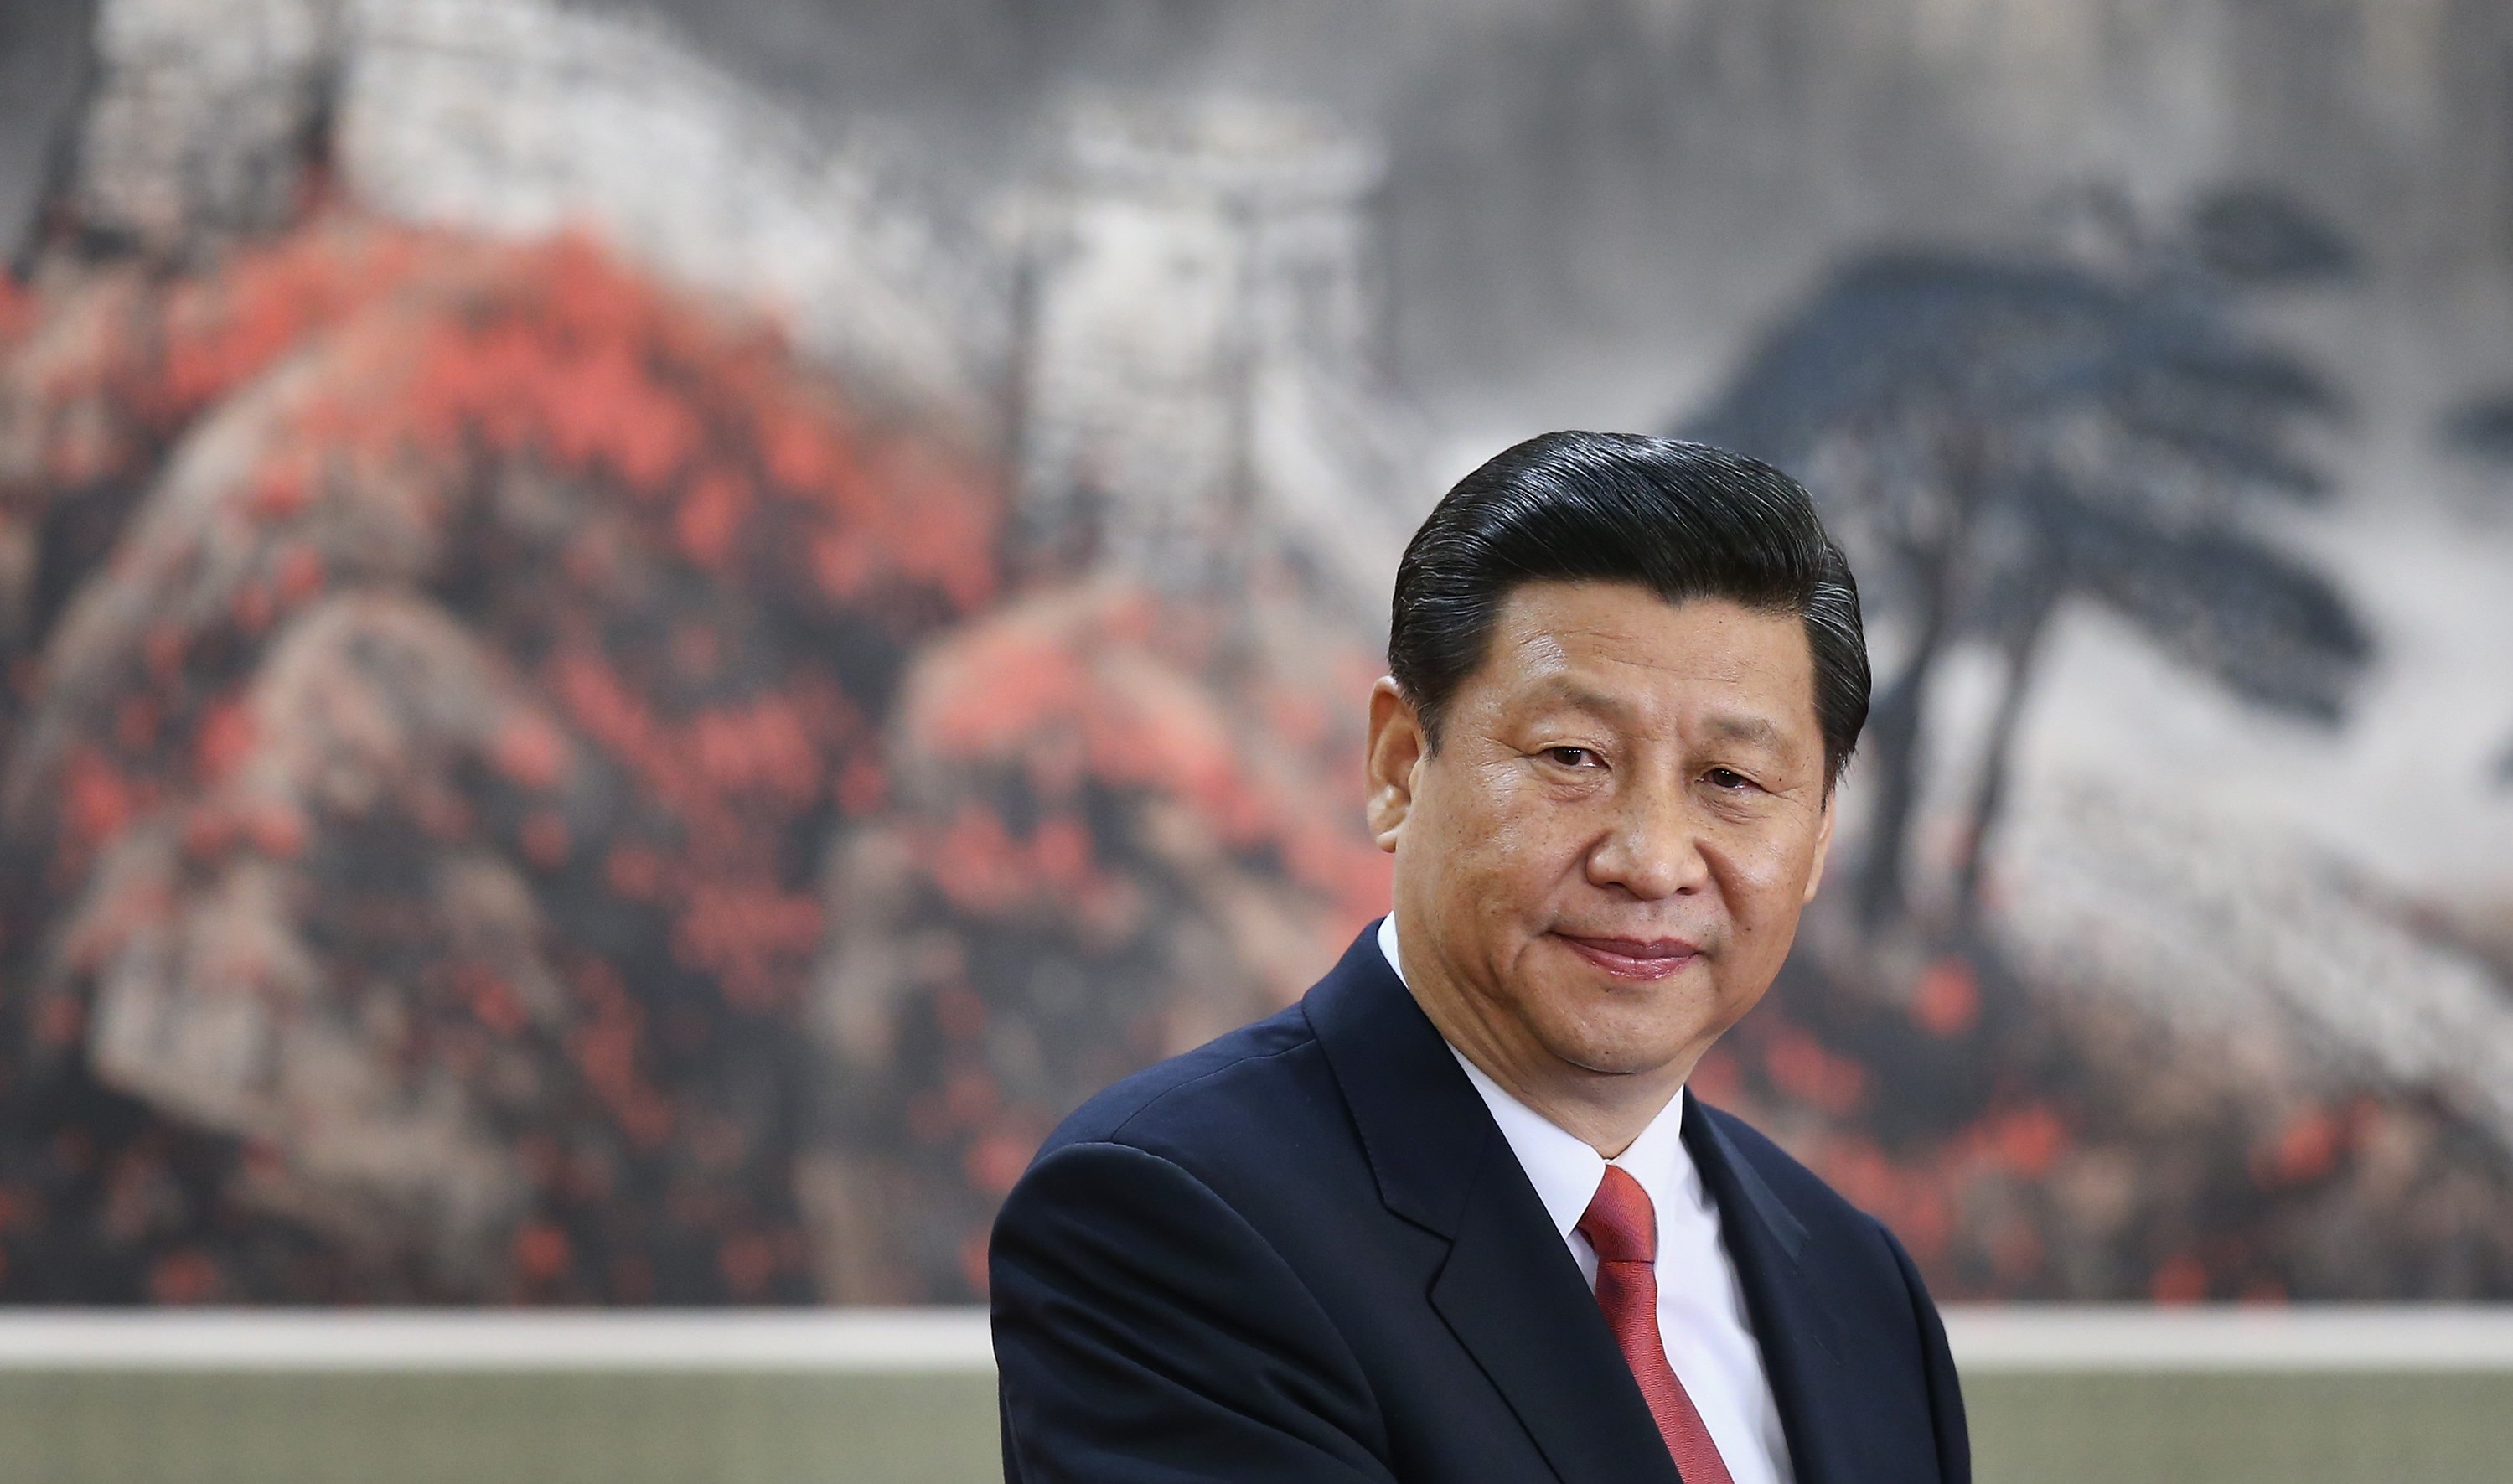 Spezial-Editorial: Auf dem Weg in ein neues China – Darum ist Xi Jinping anders als vorherige KP-Führer